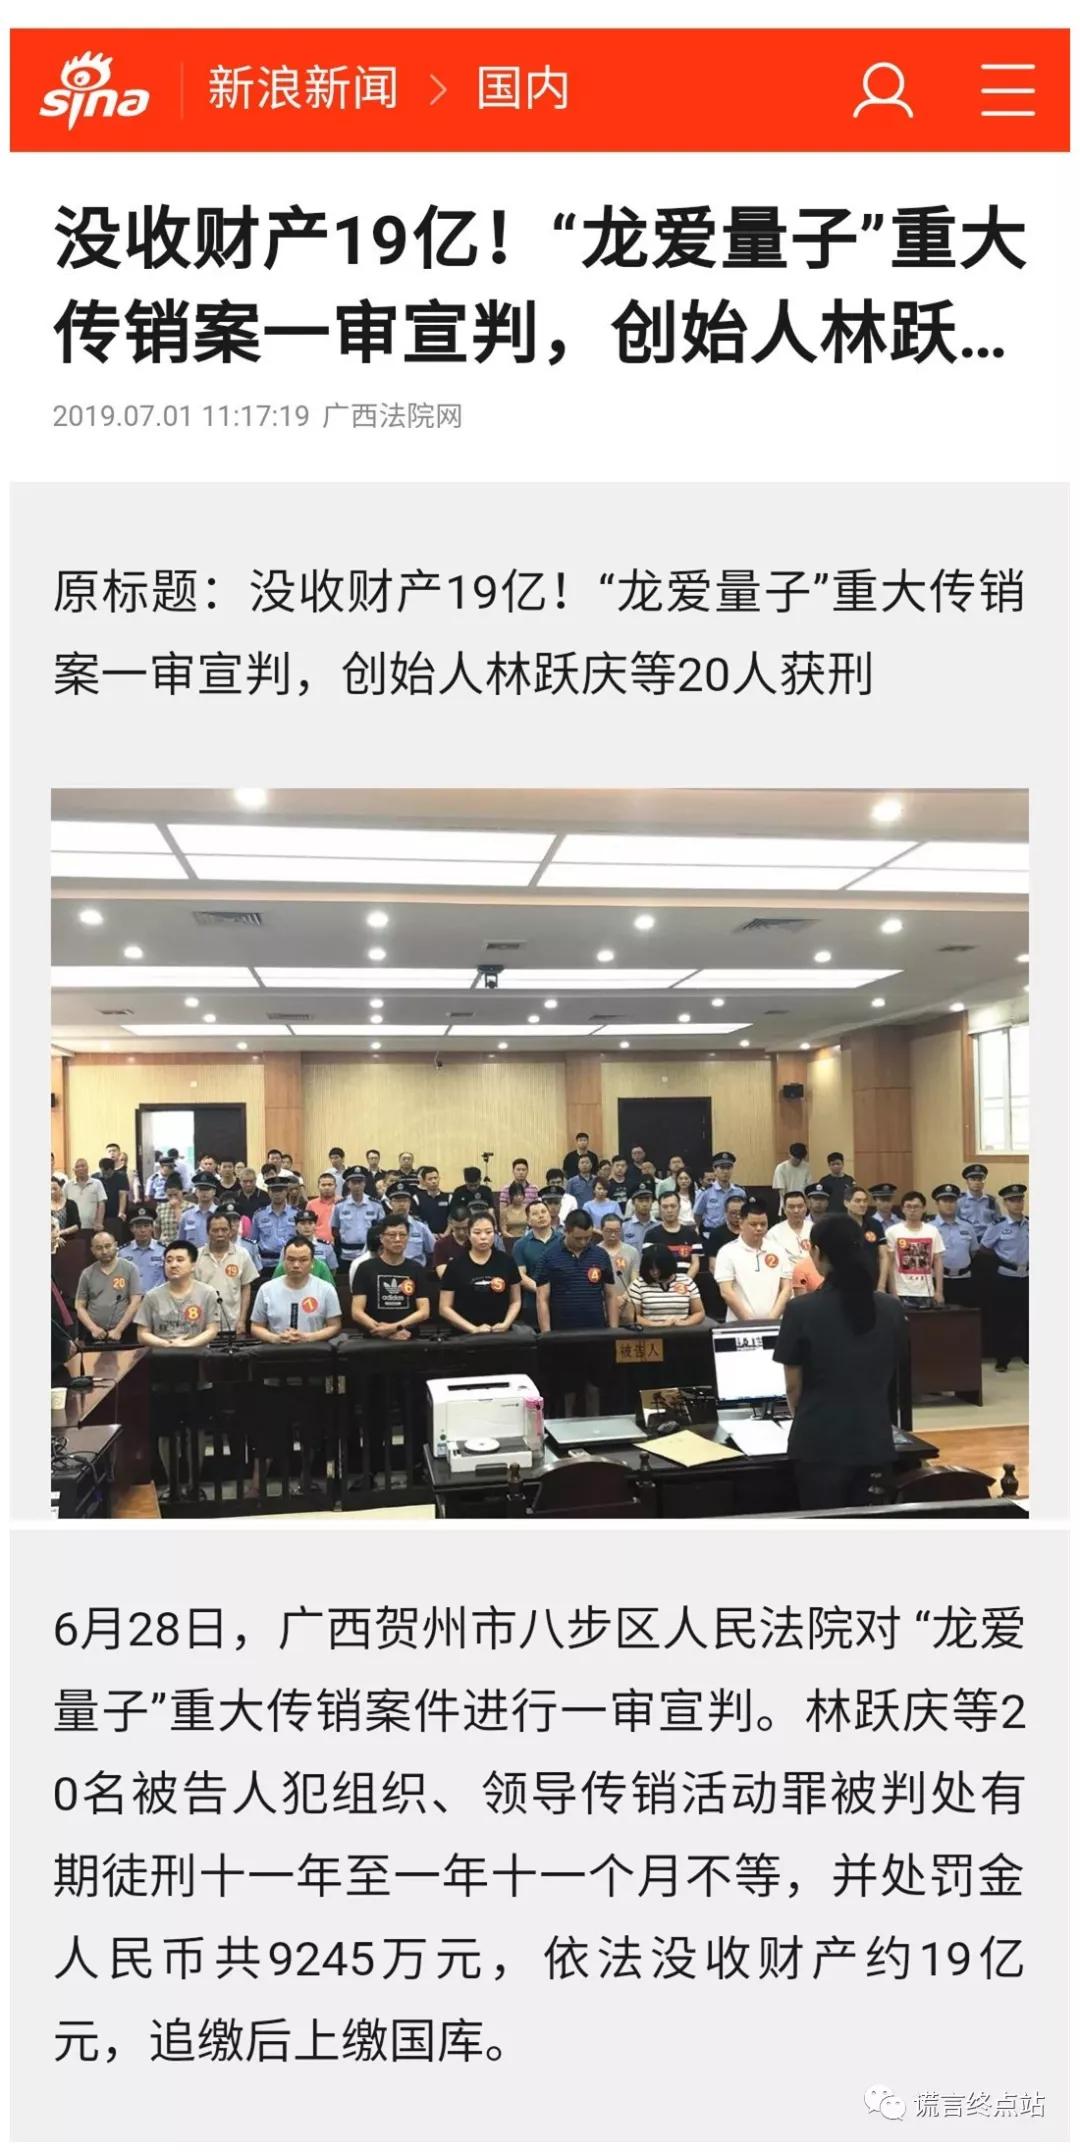 2016年8月12日,龙爱量子的林跃庆等人被抓捕